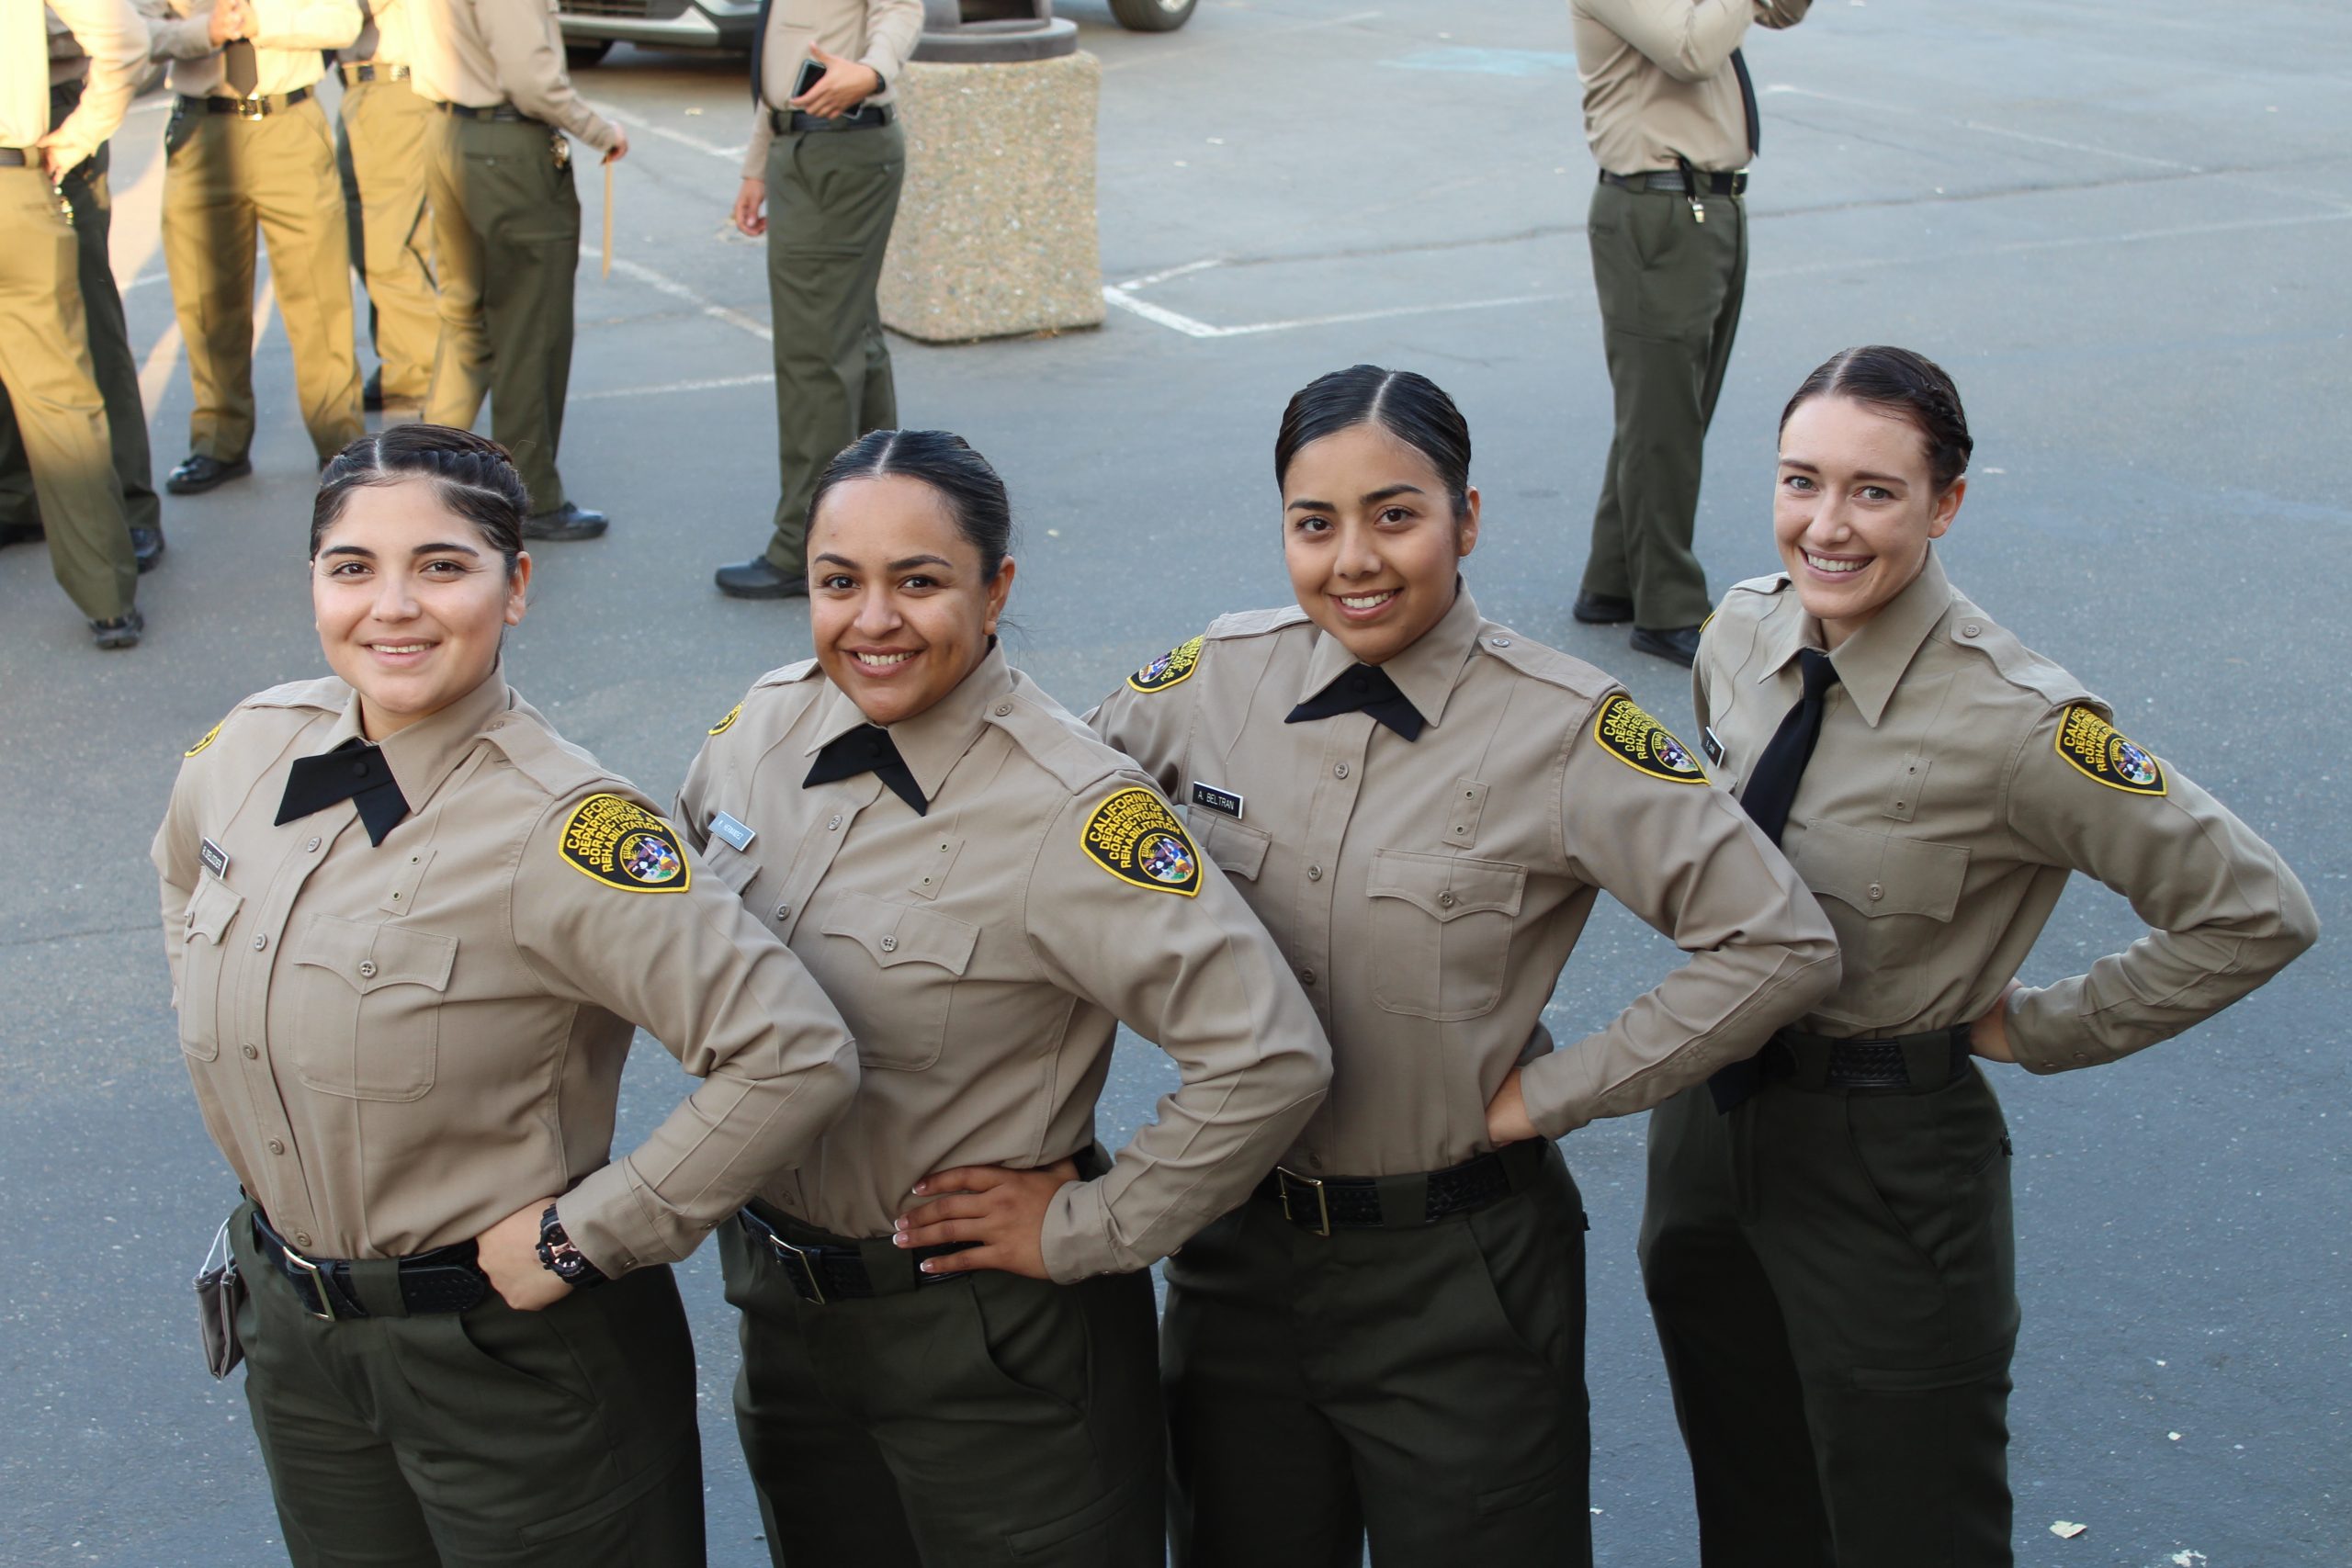 Cadets at graduation